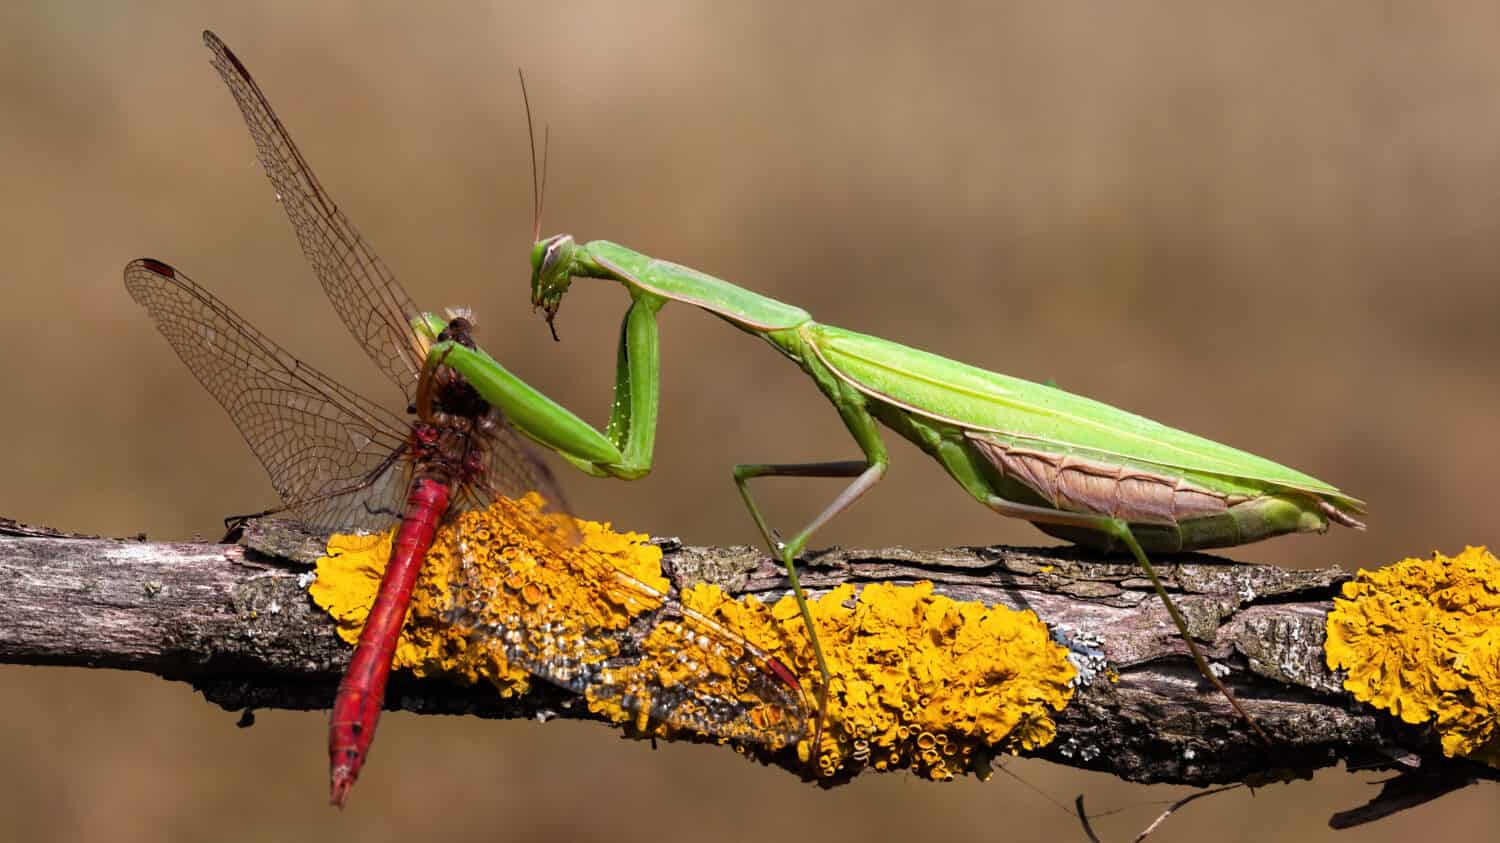 Mantide europea verde, mantide religiosa, che si nutre di libellula rossa nella natura estiva.  Insetto predatore caccia sul ramo.  Animale selvatico in ambiente naturale.